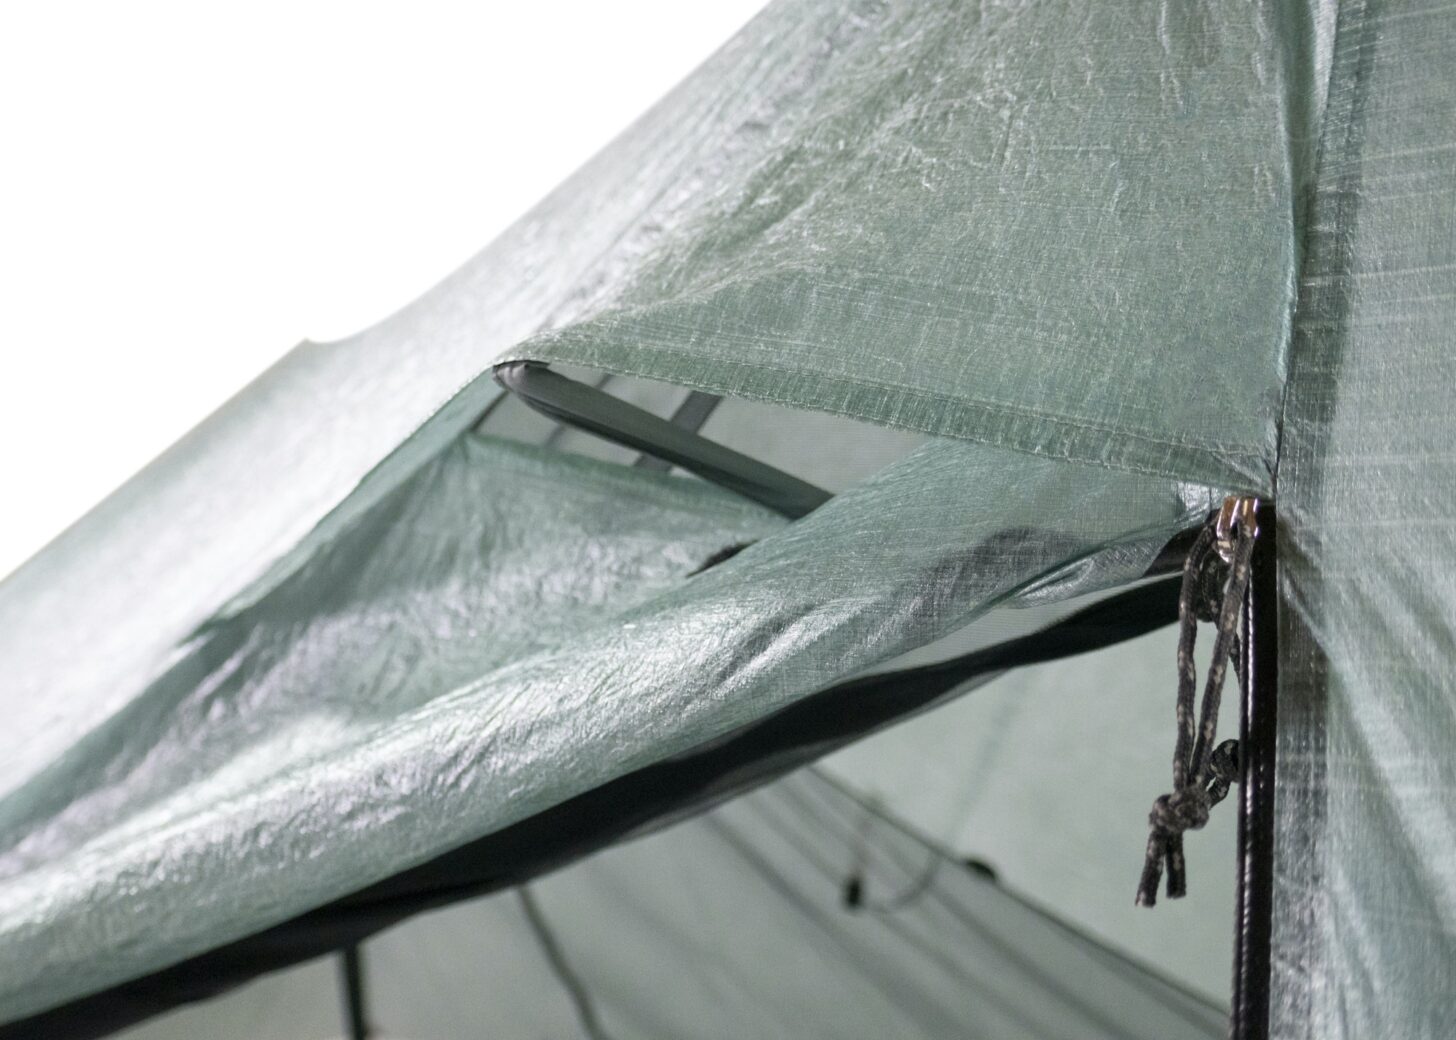 A tent vent is shown near a zipper.